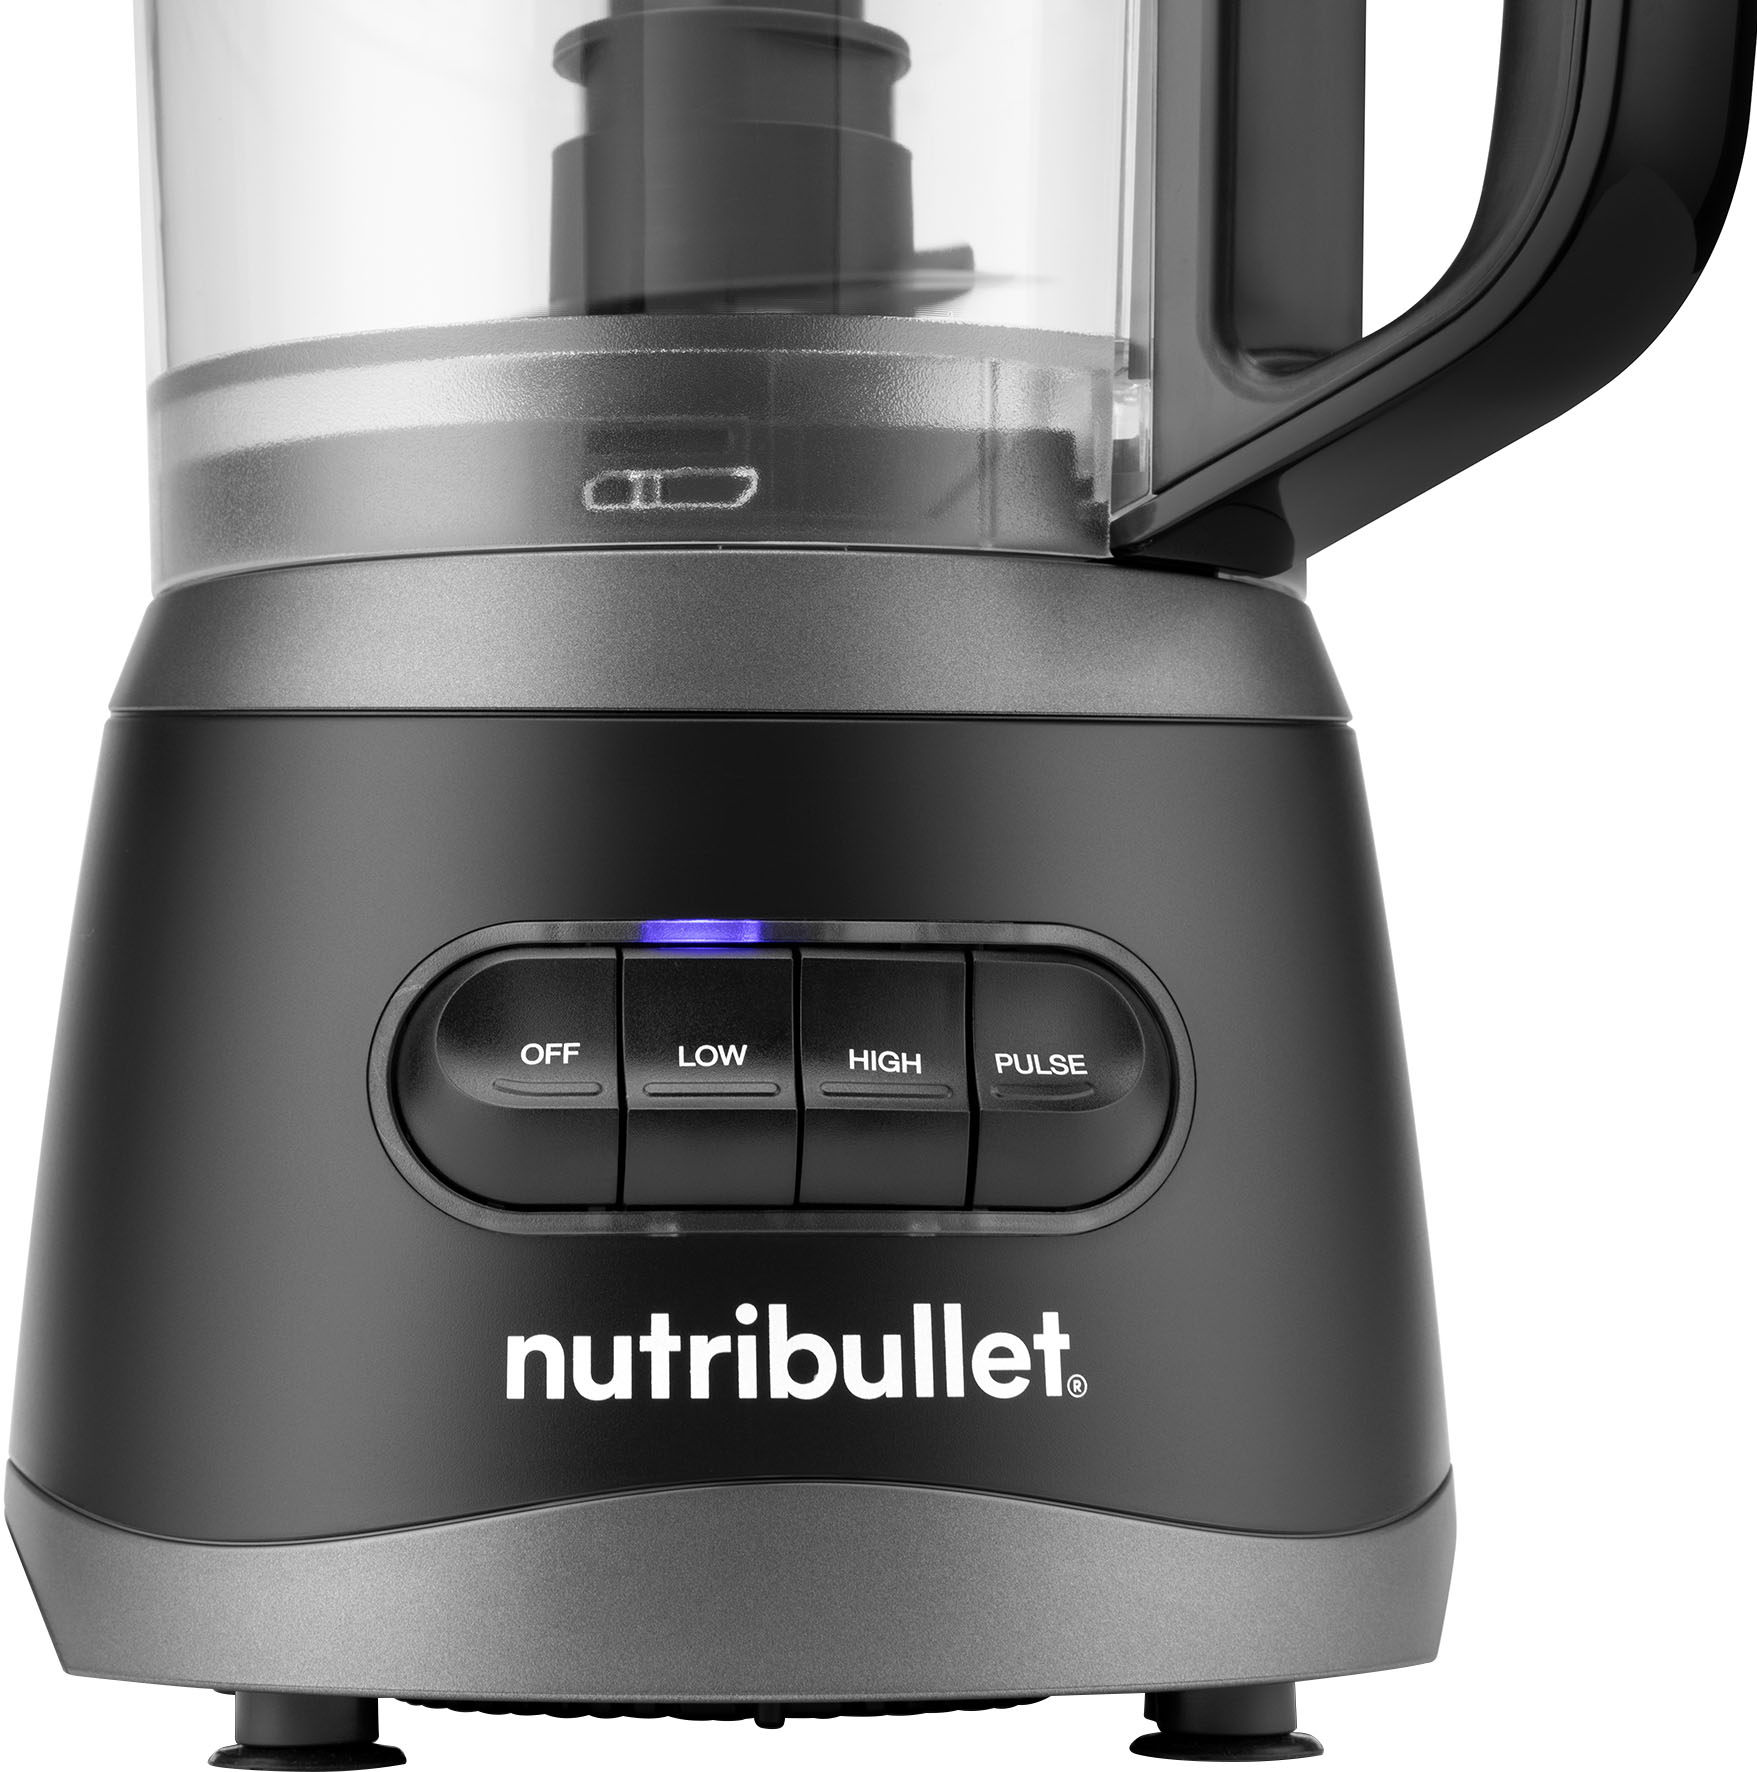 Best Buy: nutribullet 7-Cup Food Processor with Built-In Storage NBP50100  Black NBP50100